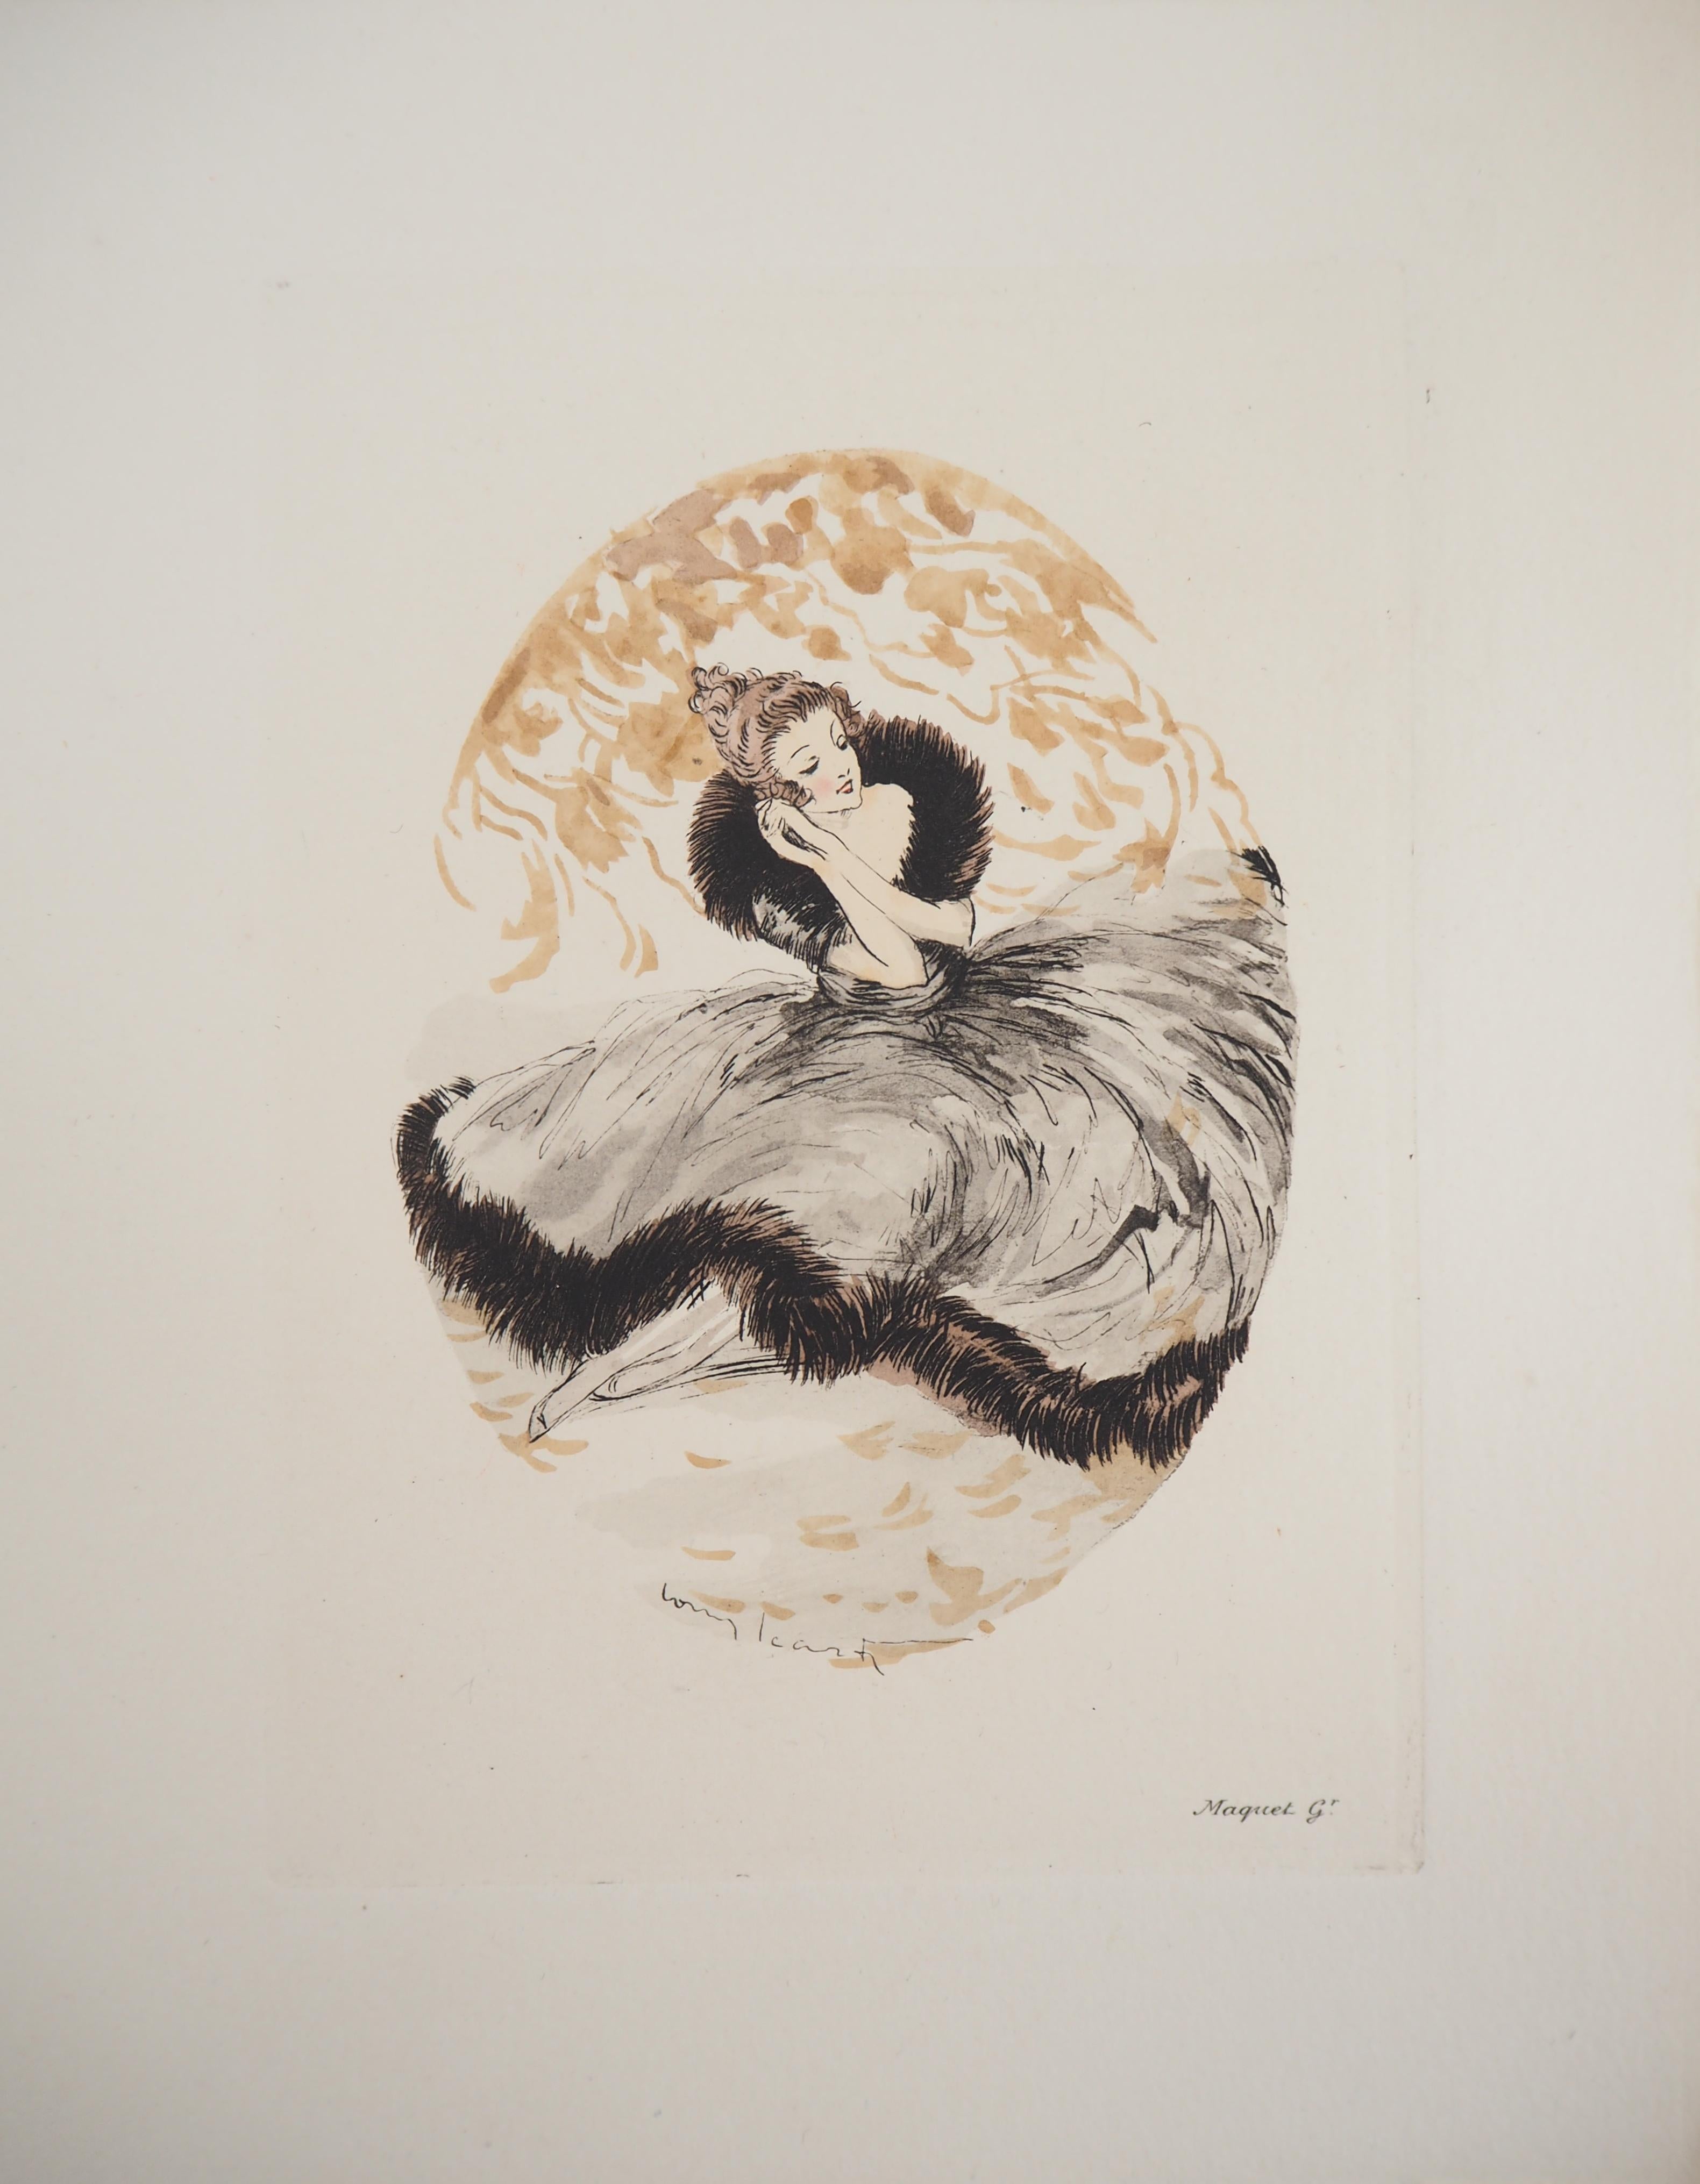 Louis Icart
Träumendes Mädchen

Original Radierung und Schablone
Gedruckte Unterschrift auf der Platte
Auf Vellum 19 x 29 cm (ca. 8 x 12 Zoll)

Ausgezeichneter Zustand